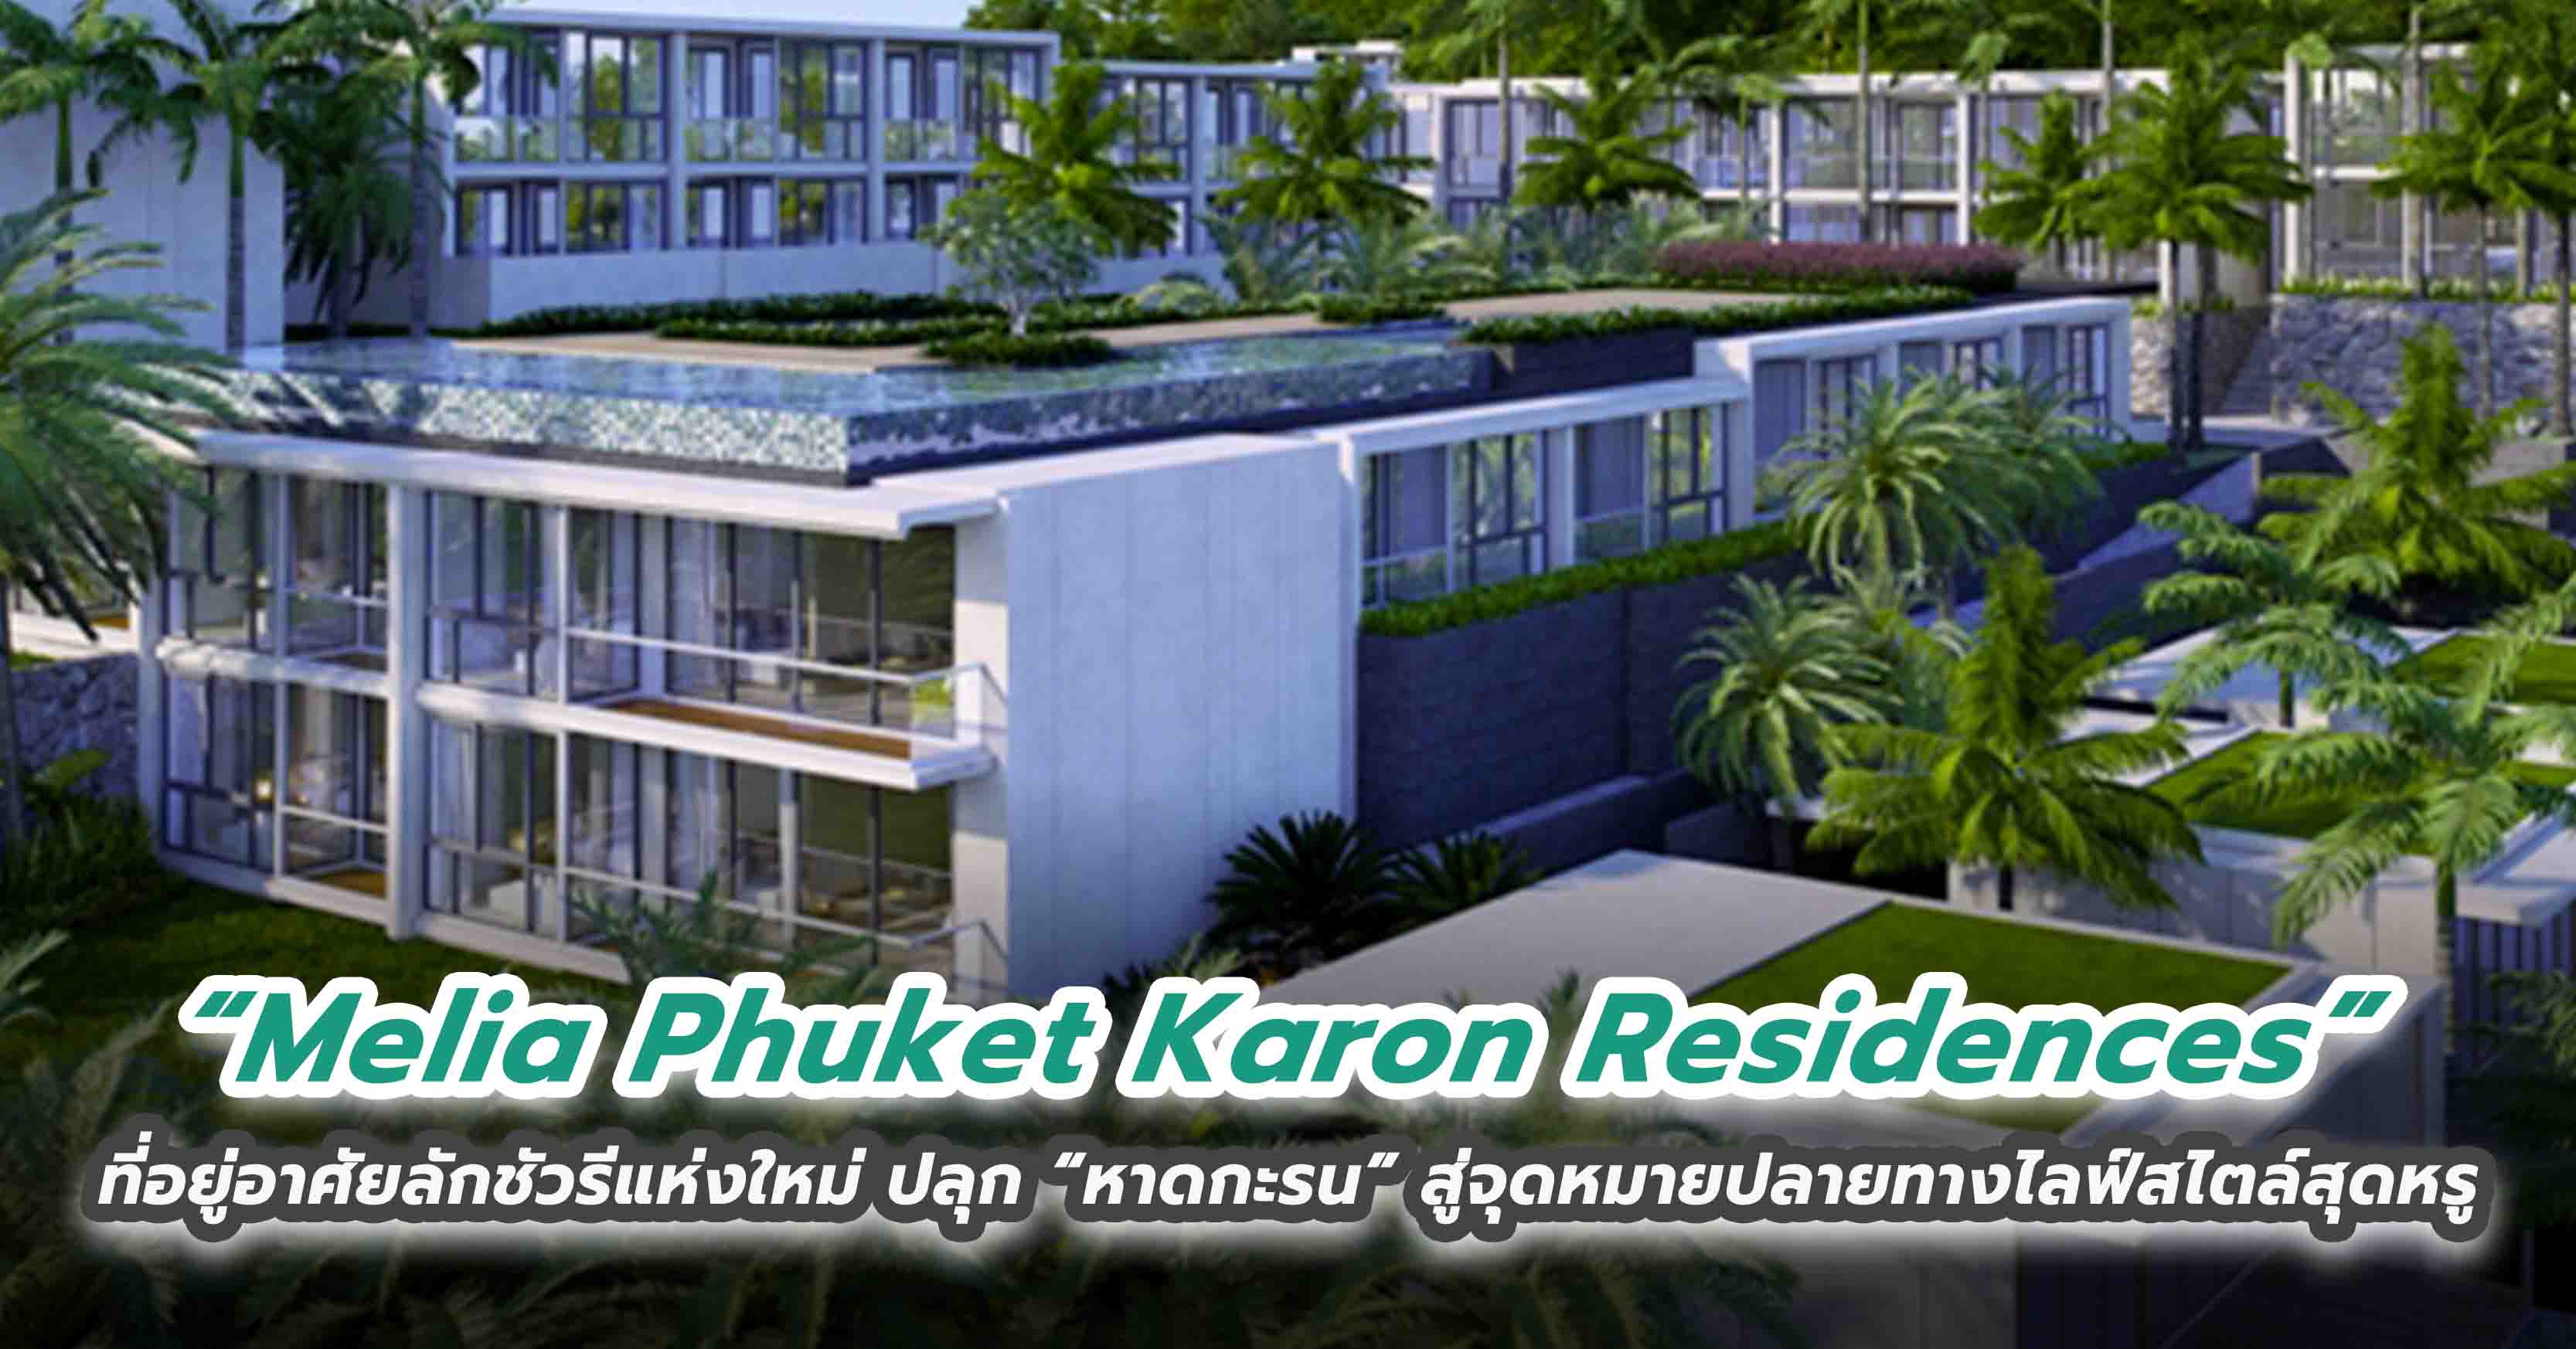 “Melia Phuket Karon Residences” ที่อยู่อาศัยลักชัวรีแห่งใหม่ ปลุก “หาดกะรน” สู่จุดหมายปลายทางไล...